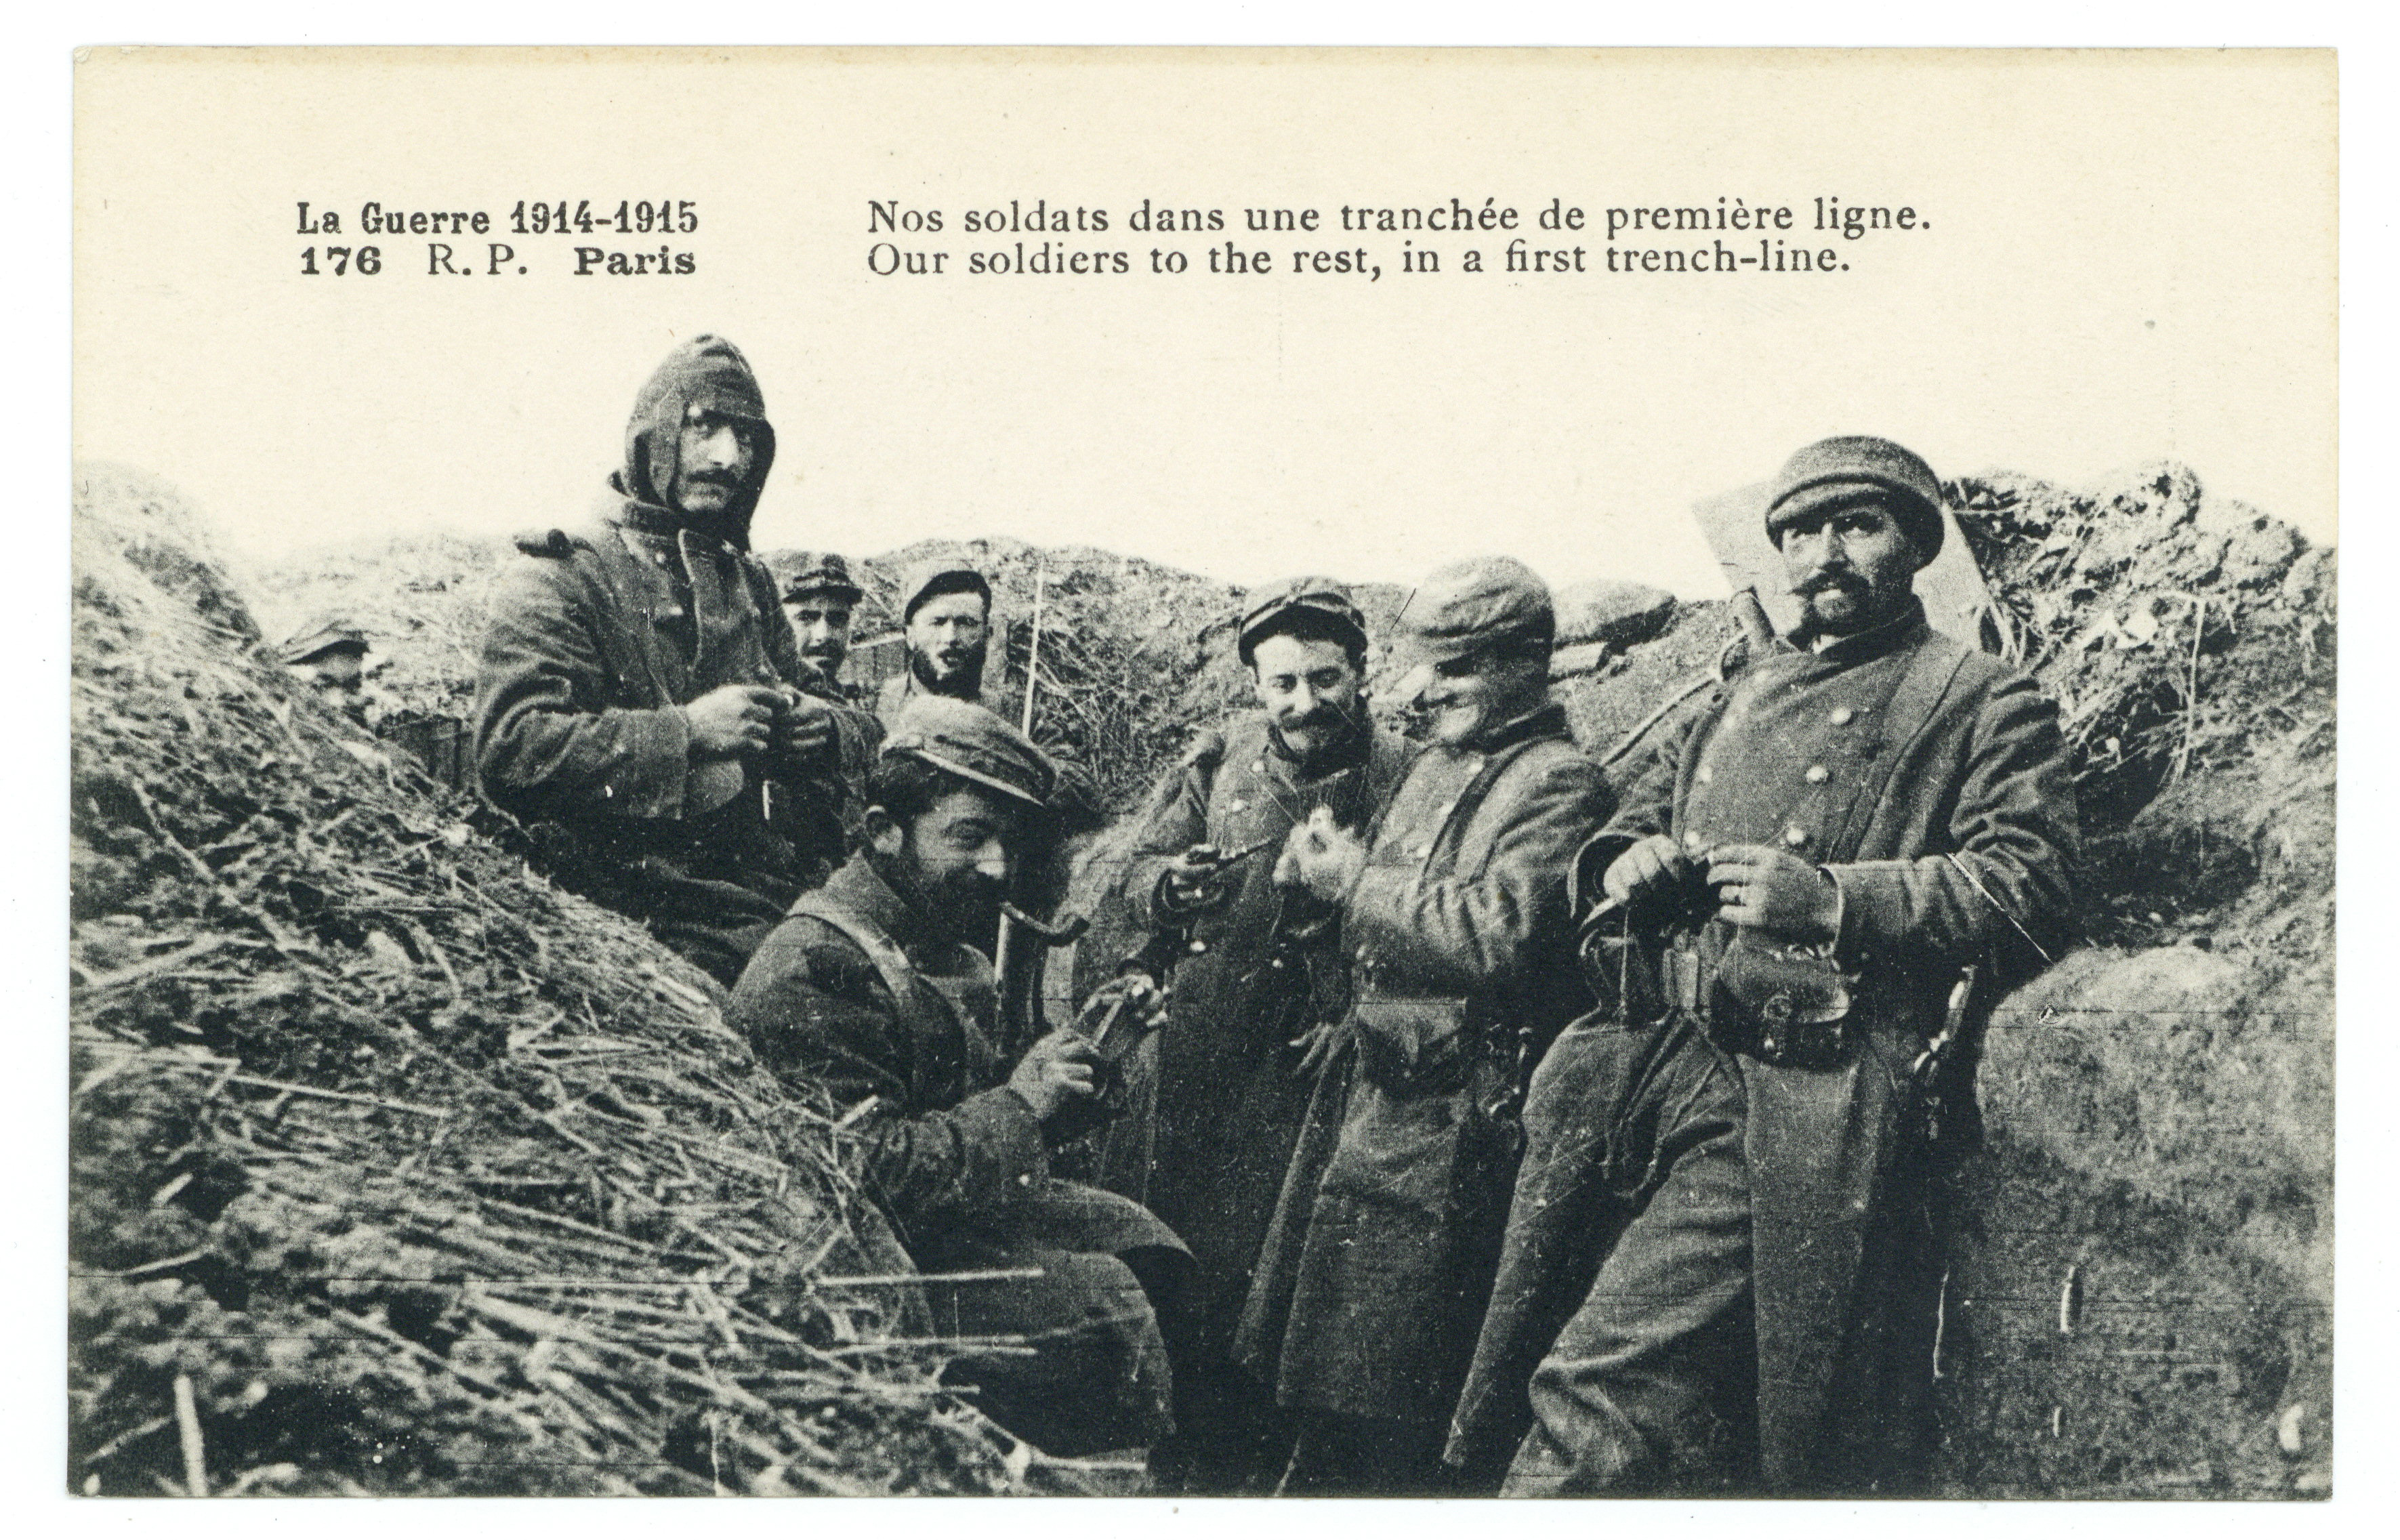 Contenu du Nos soldats dans une tranchée de première ligne. La guerre 1914-1915